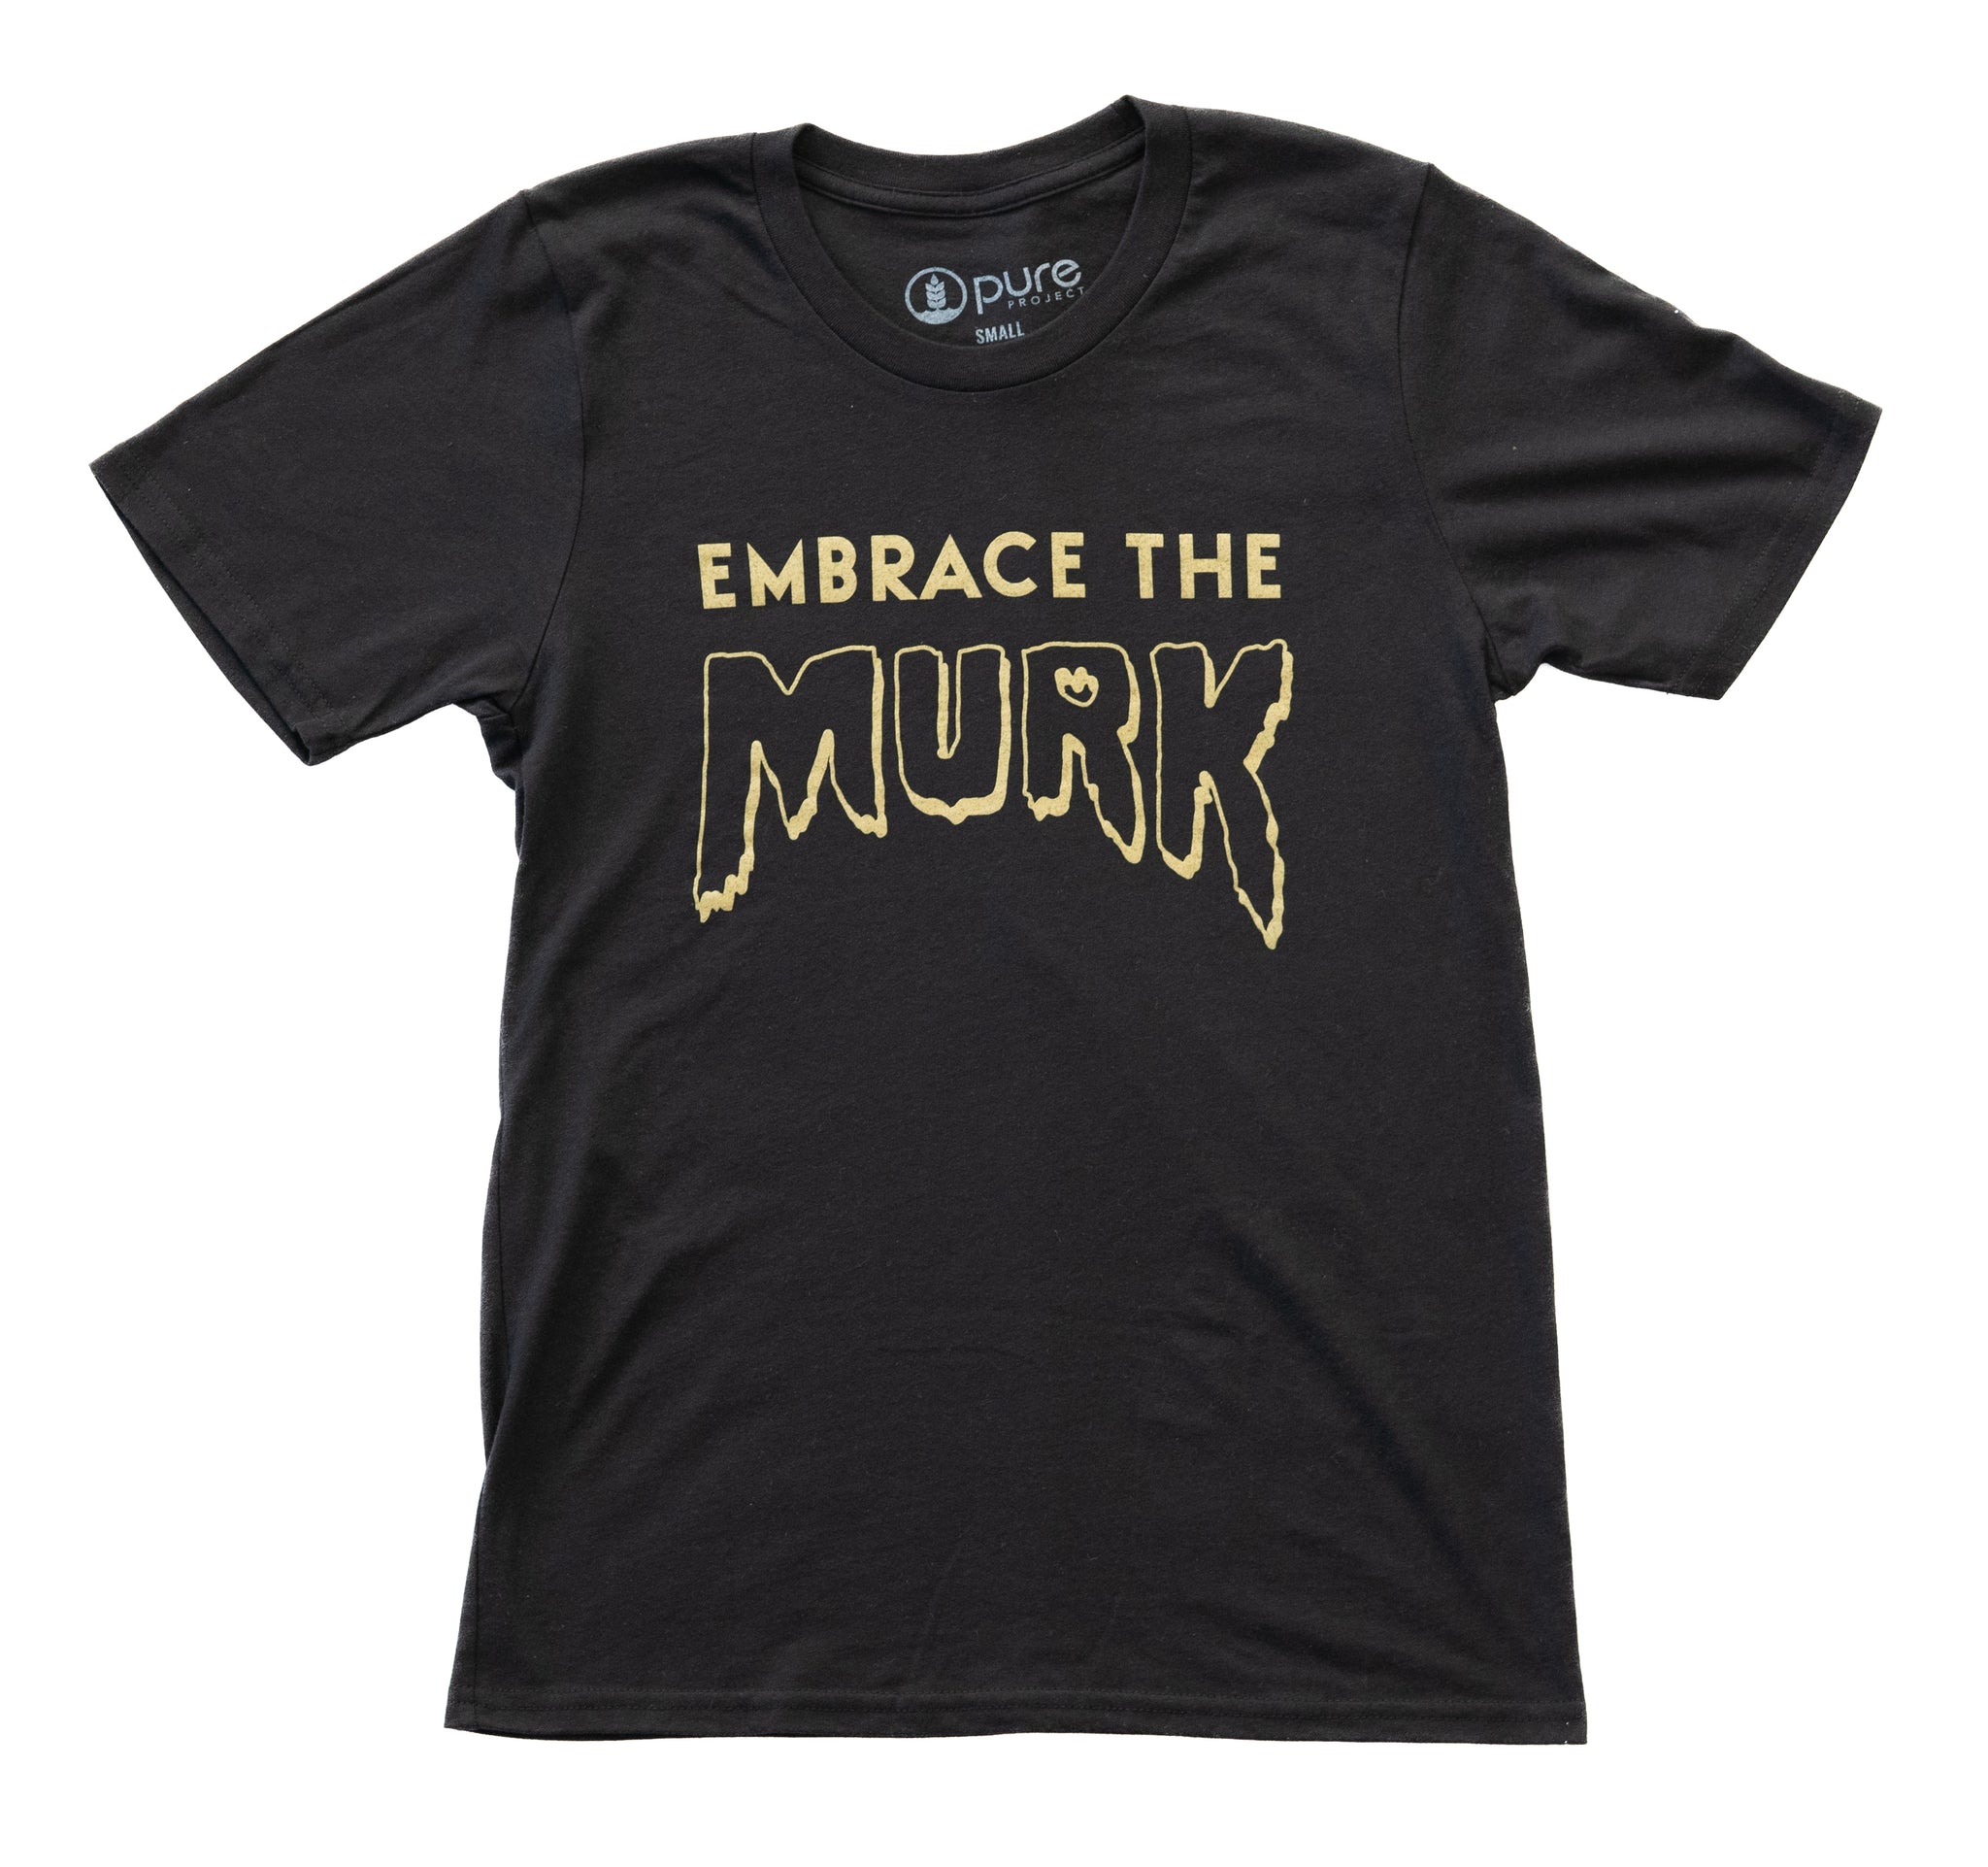 "Embrace The Murk" T-shirt